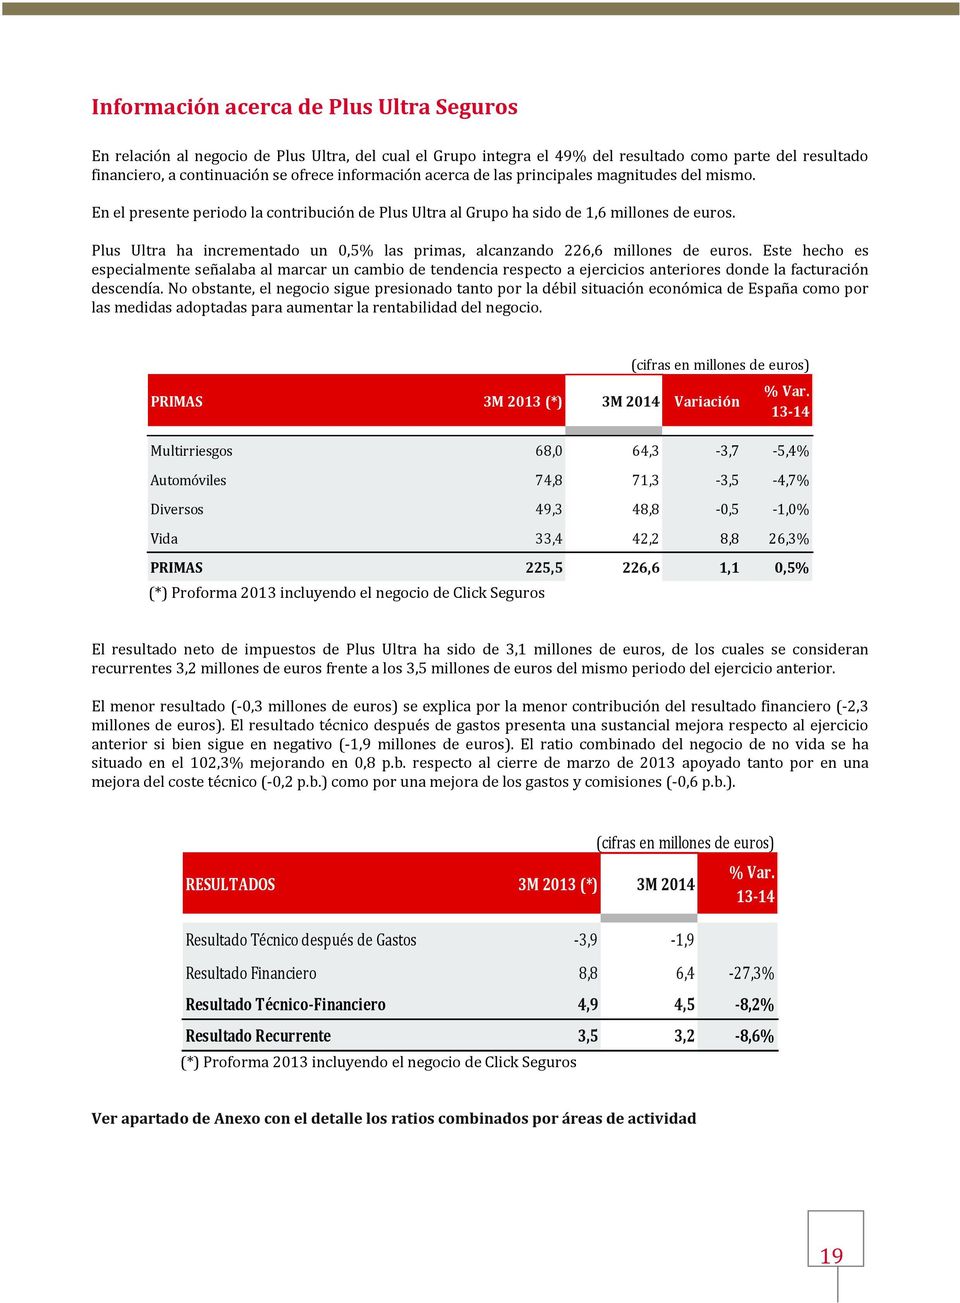 Plus Ultra ha incrementado un 0,5% las primas, alcanzando 226,6 millones de euros.